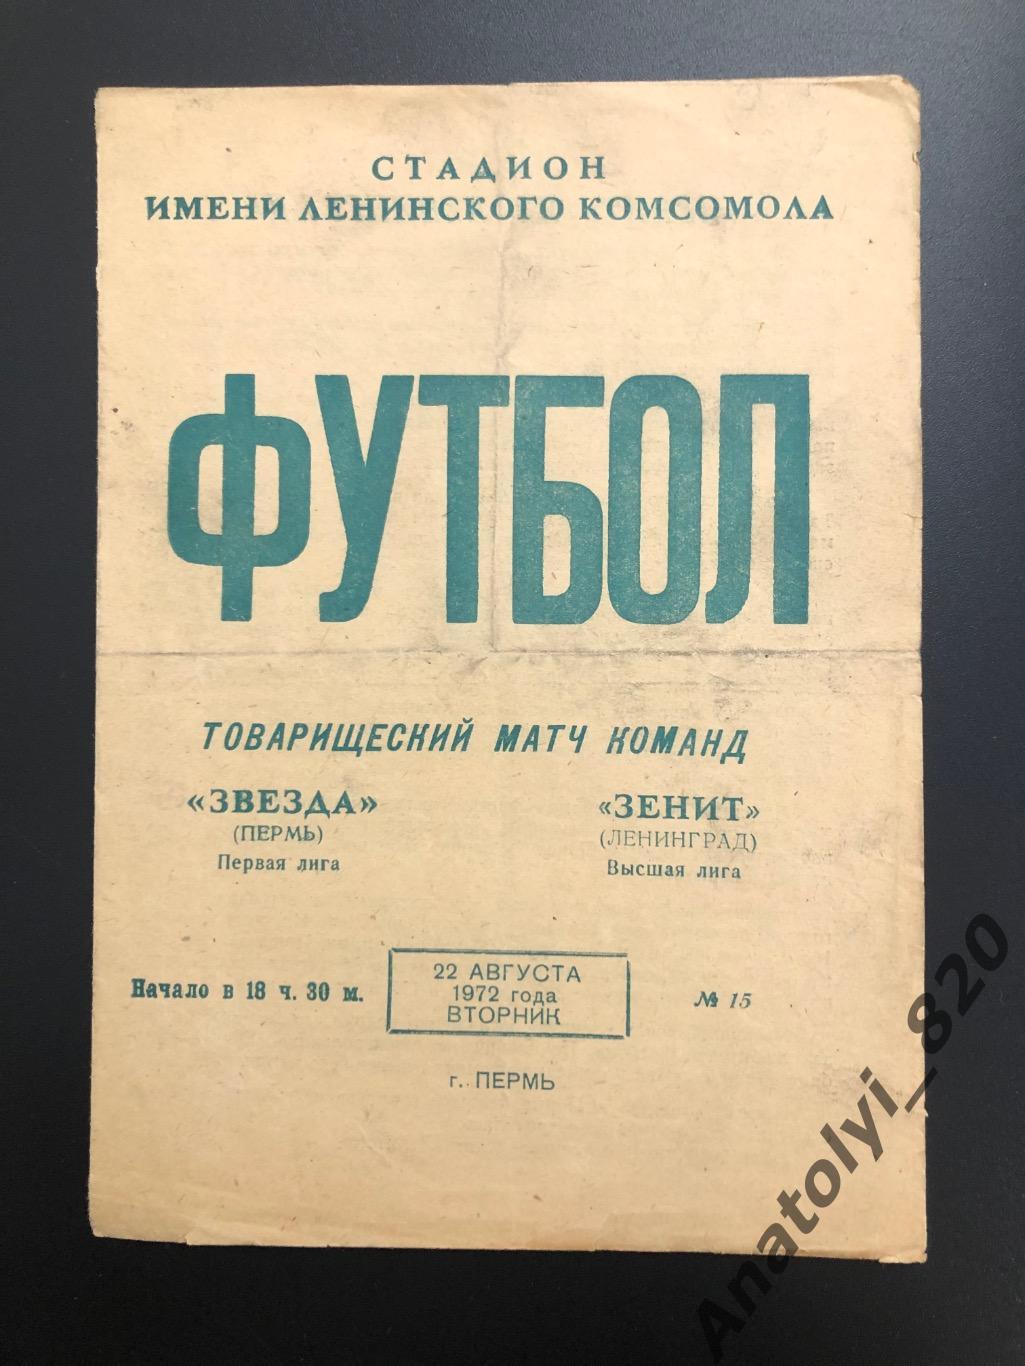 Звезда Пермь - Зенит Ленинград, 22.08.1972, товарищеский матч